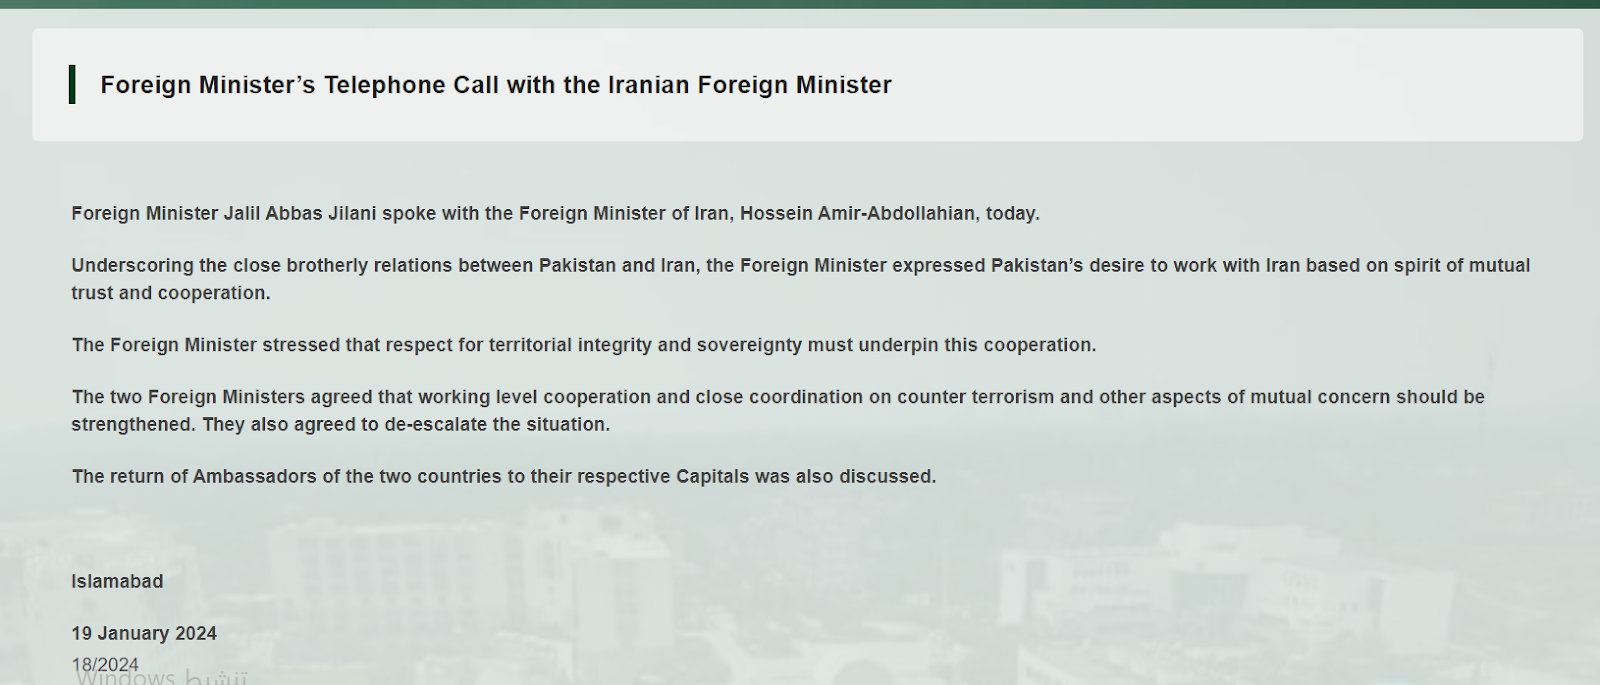 اتصال هاتفي بين وزير الخارجية الباكستاني والإيراني/موقع وزارة الخارجية الباكستانية